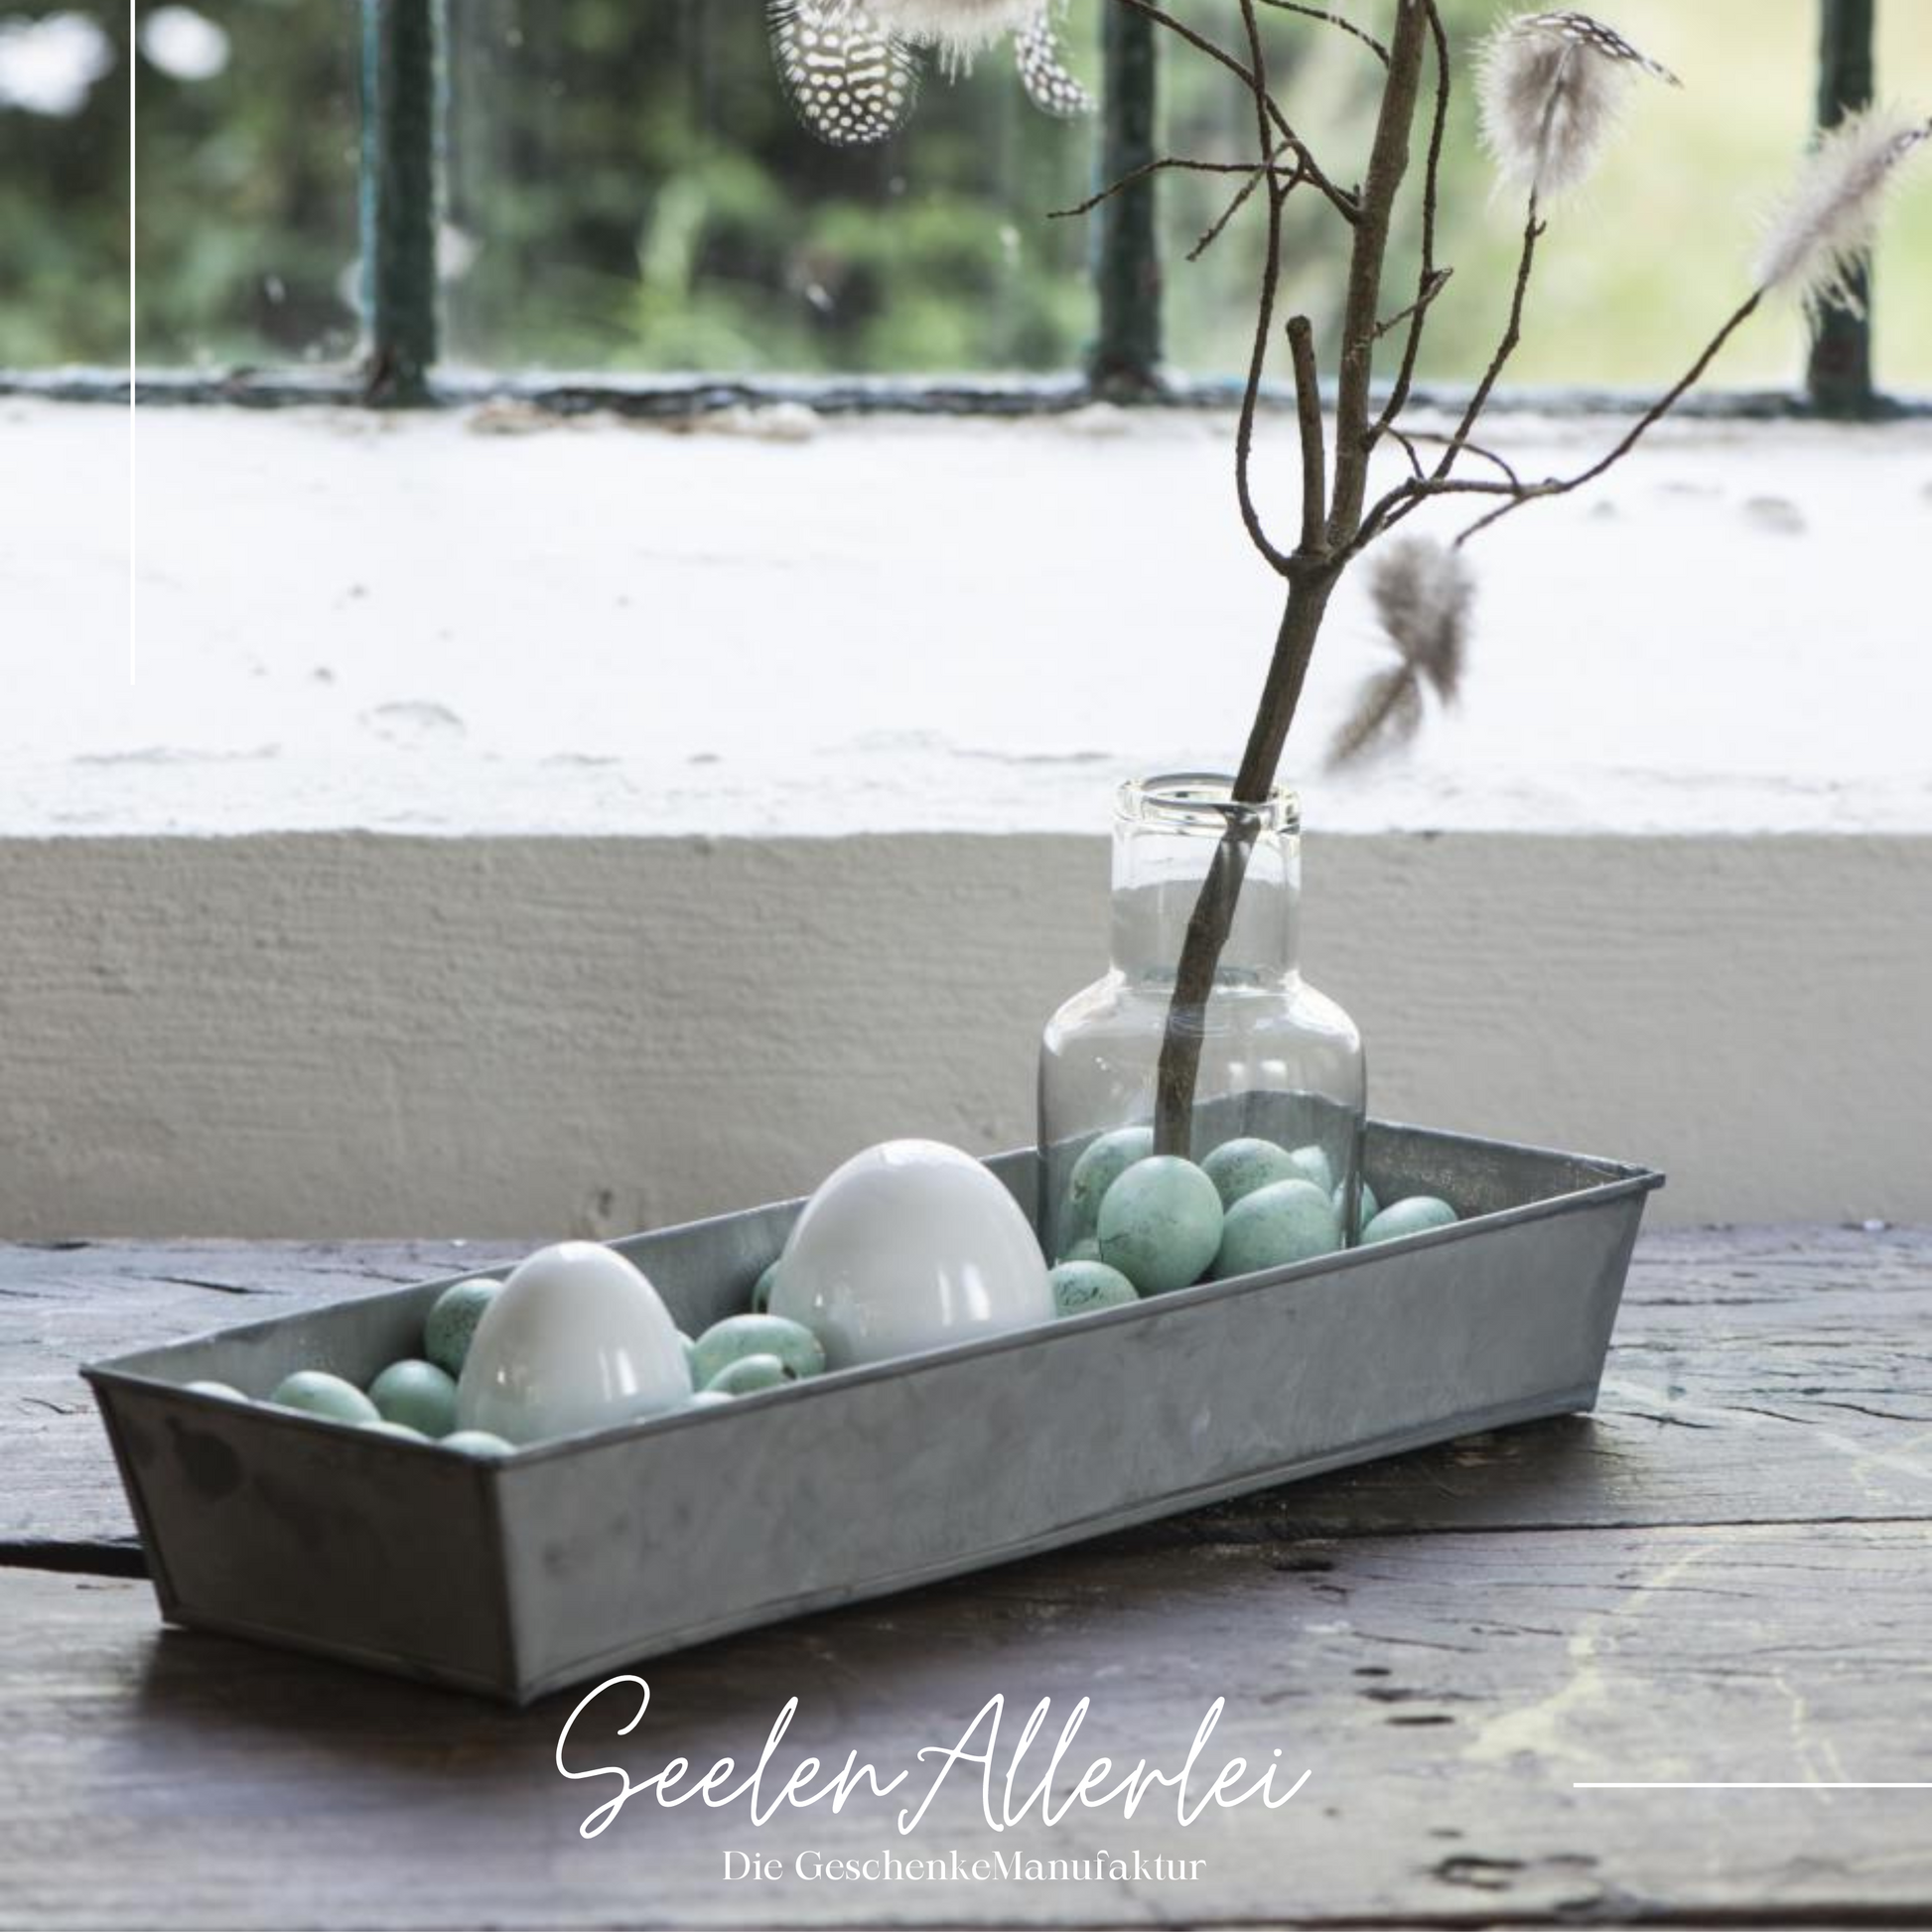 Eine Metallschale bzw ein Metalltablett steht mit Porzellan und Wachteleiern gefüllt auf einer Holzfensterbank. Neben den Eiern ist auf dem Tablett noch eine Glasvase mit einem Zweig, der mit Federn behangen ist.